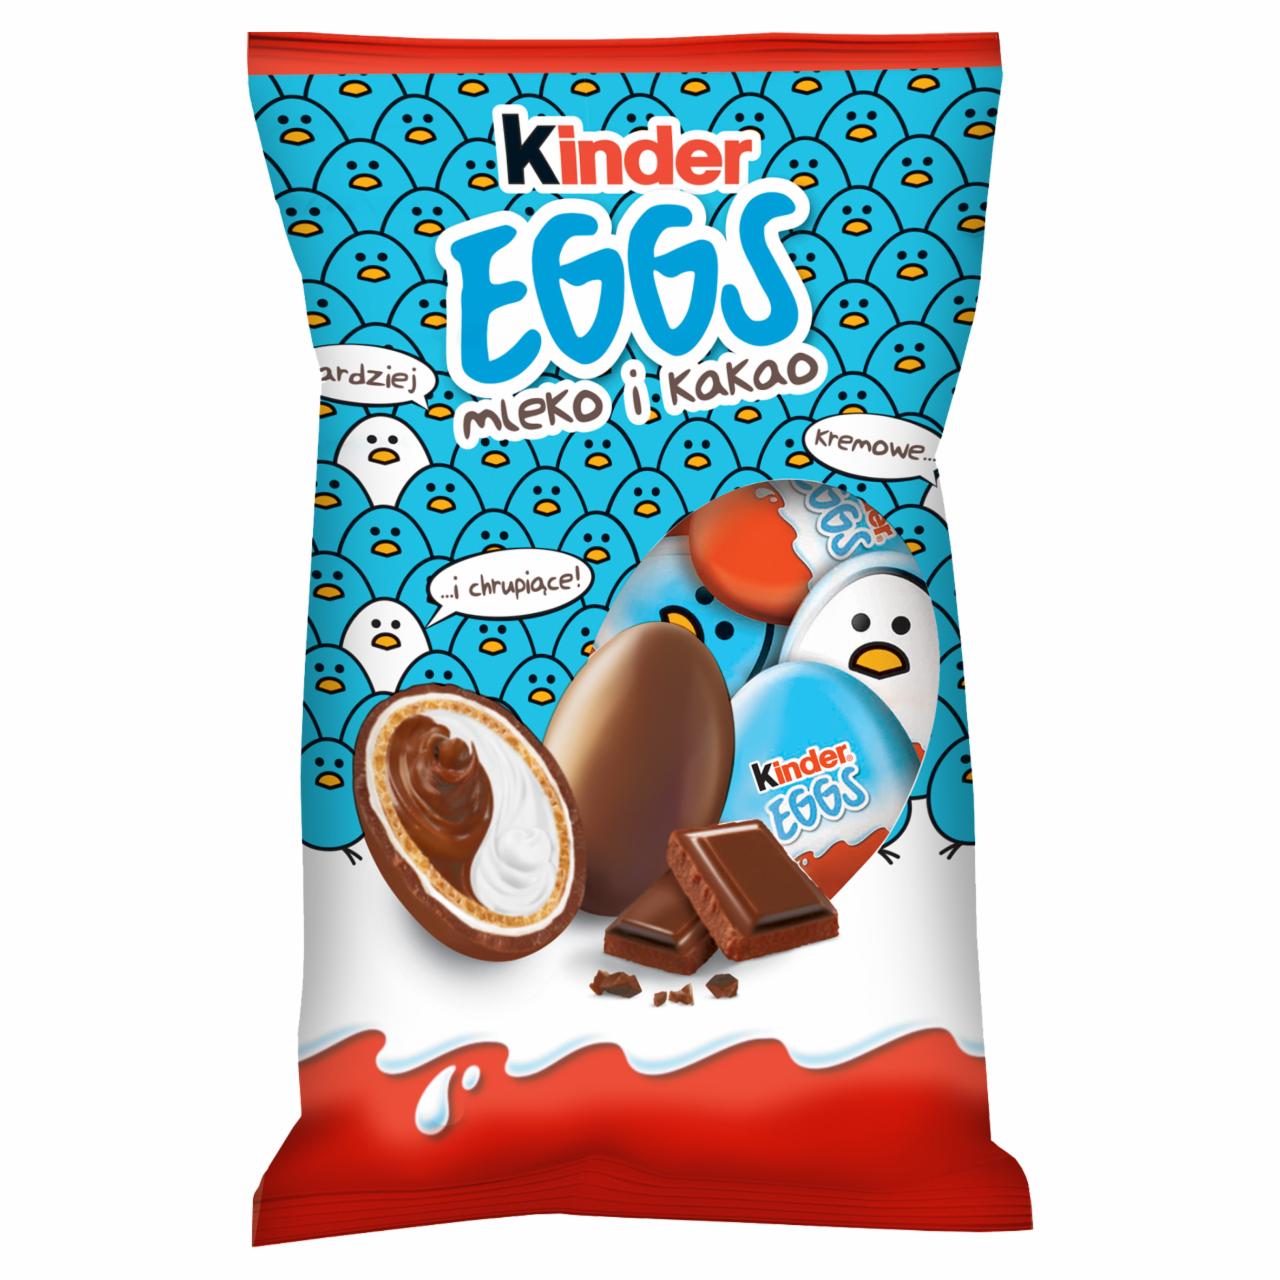 Zdjęcia - Kinder Eggs Chrupiący wafelek pokryty mleczną czekoladą z mlecznym i kakaowym nadzieniem 120 g